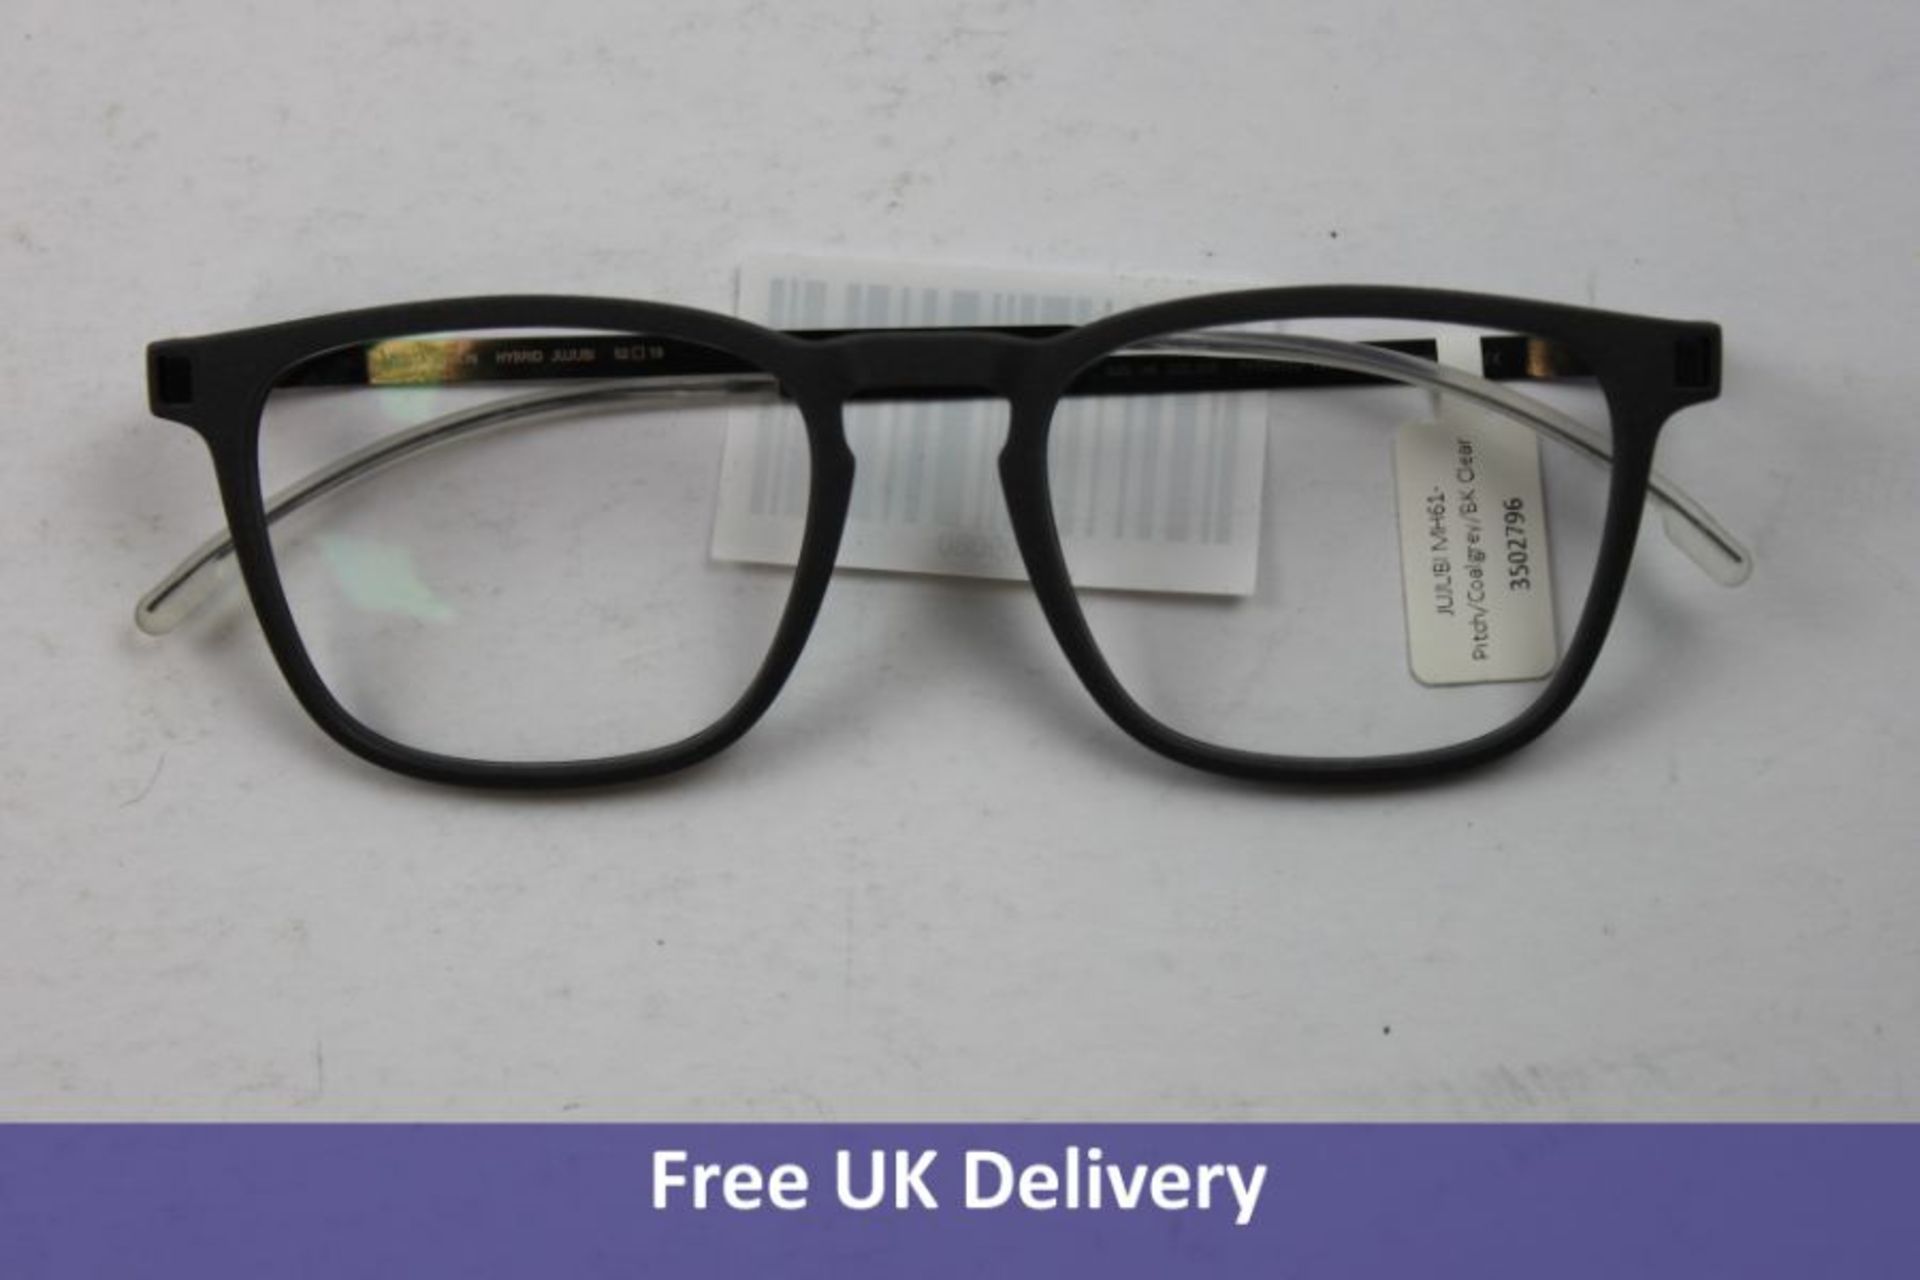 Mykita Jujubi Unisex Glasses, Coal Grey, Size 135